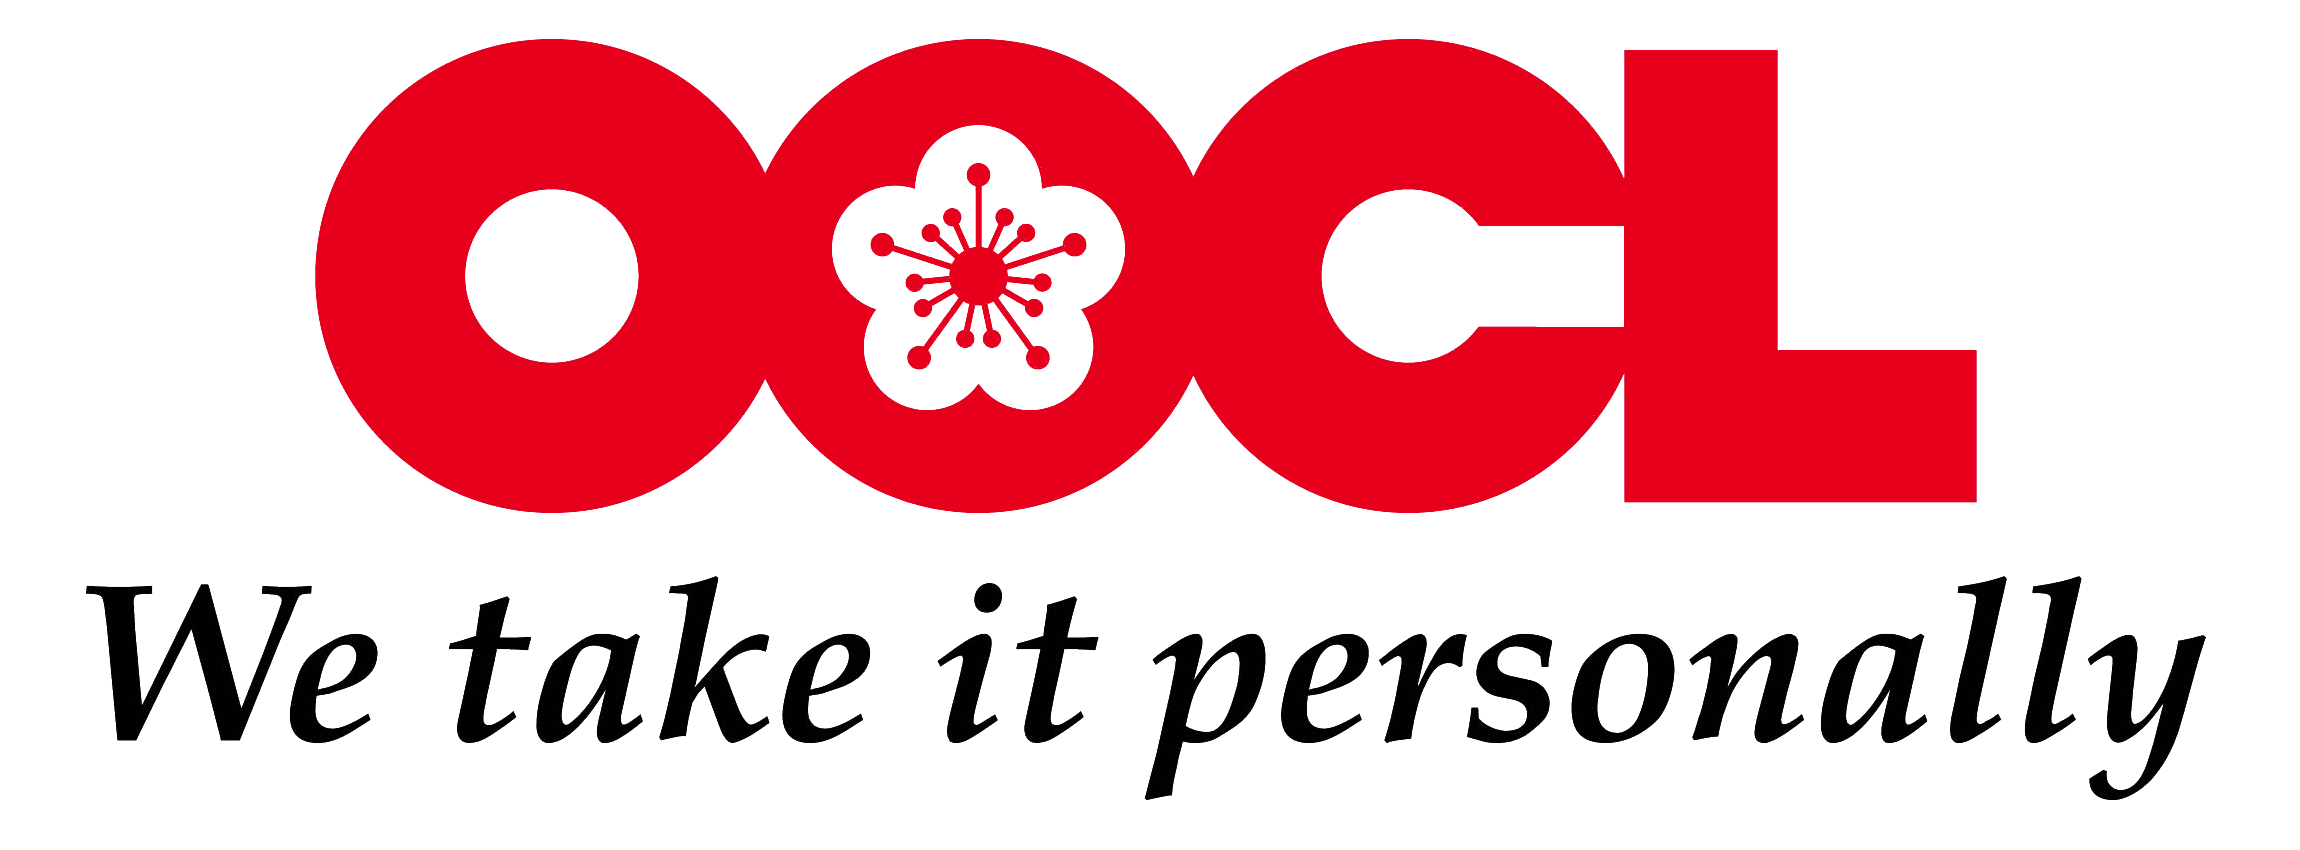 OOCL_logo_slogan.png